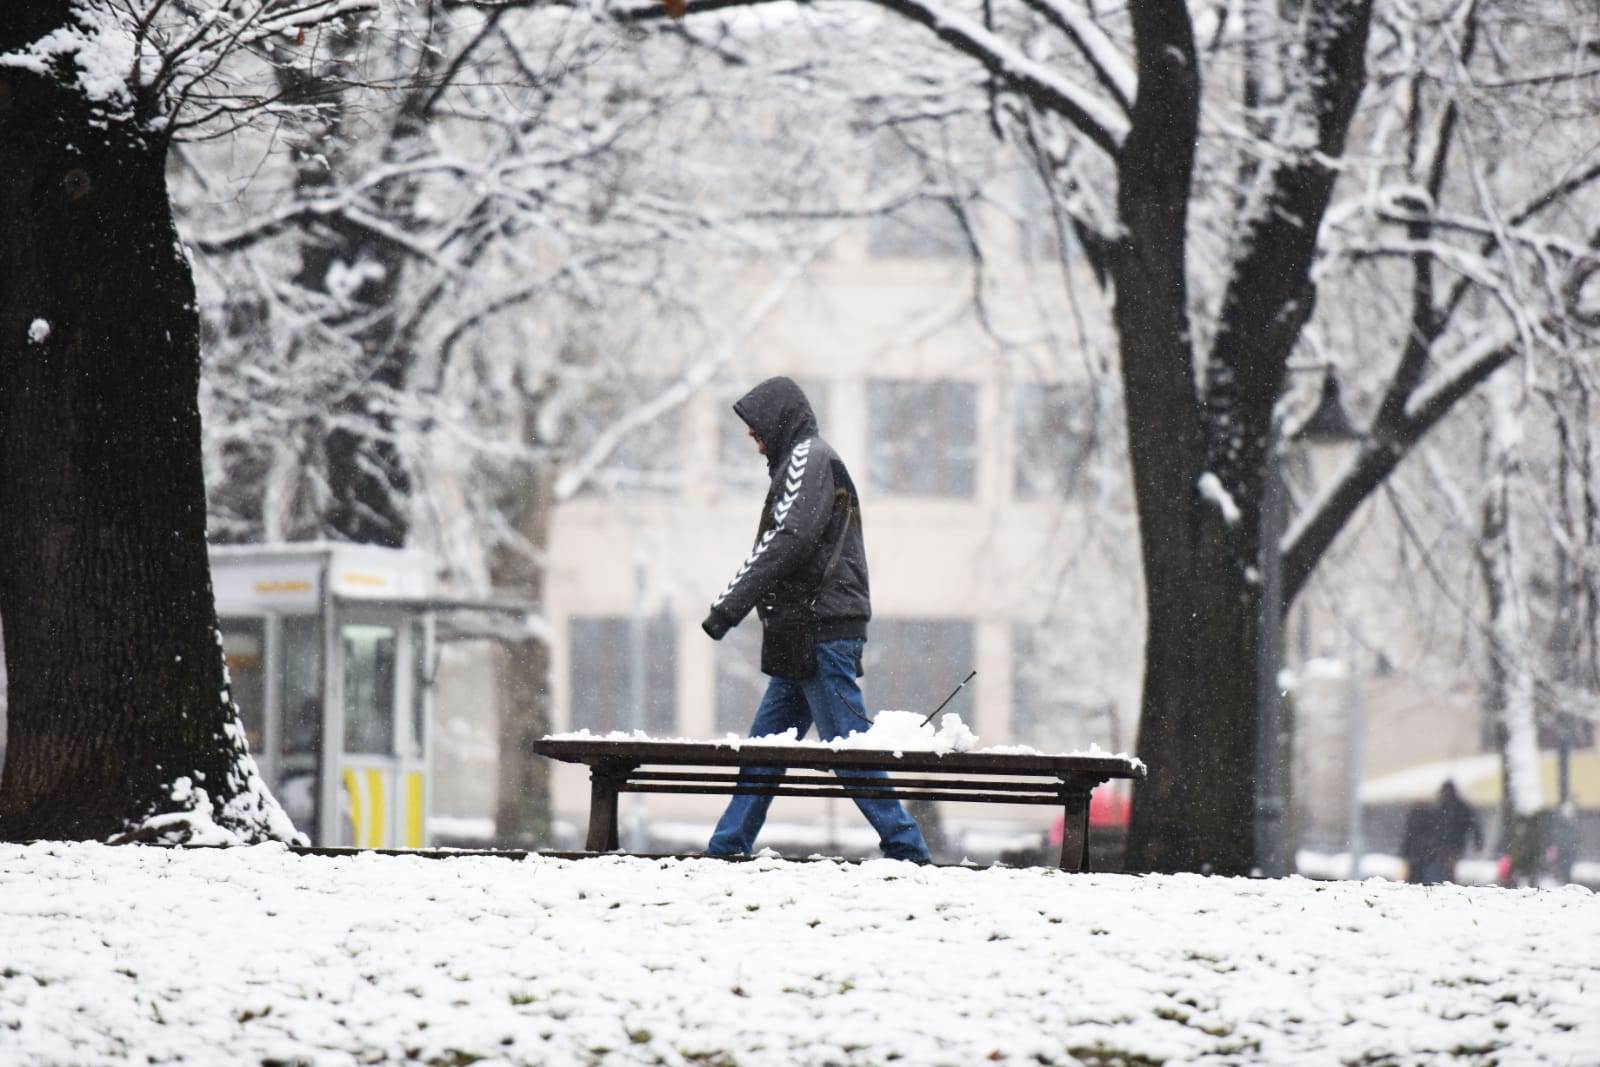  srbija zima sneg padavine vremenska prognoza padavine prestanak 